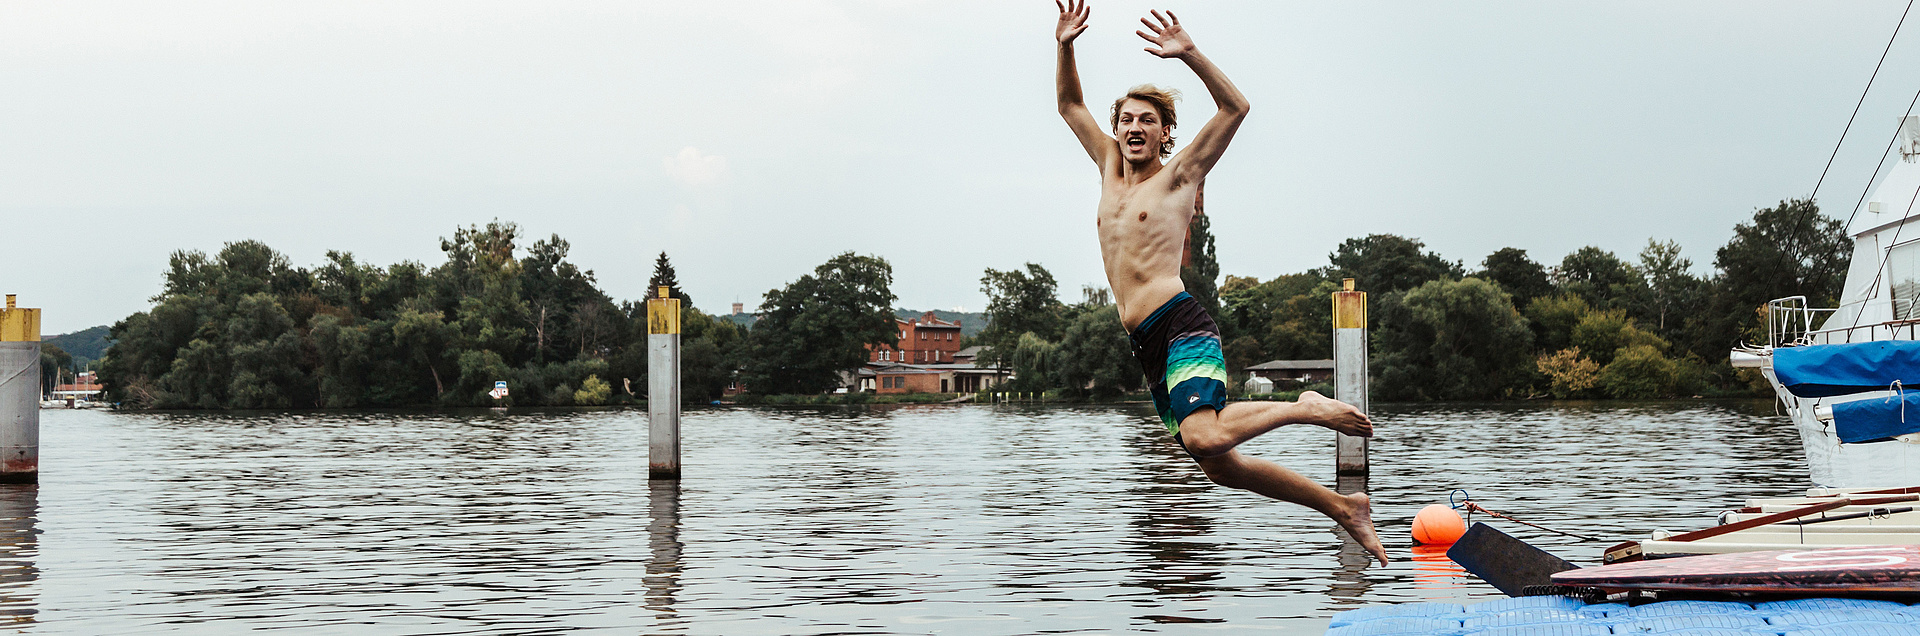 Jugendlicher springt ins Wasser